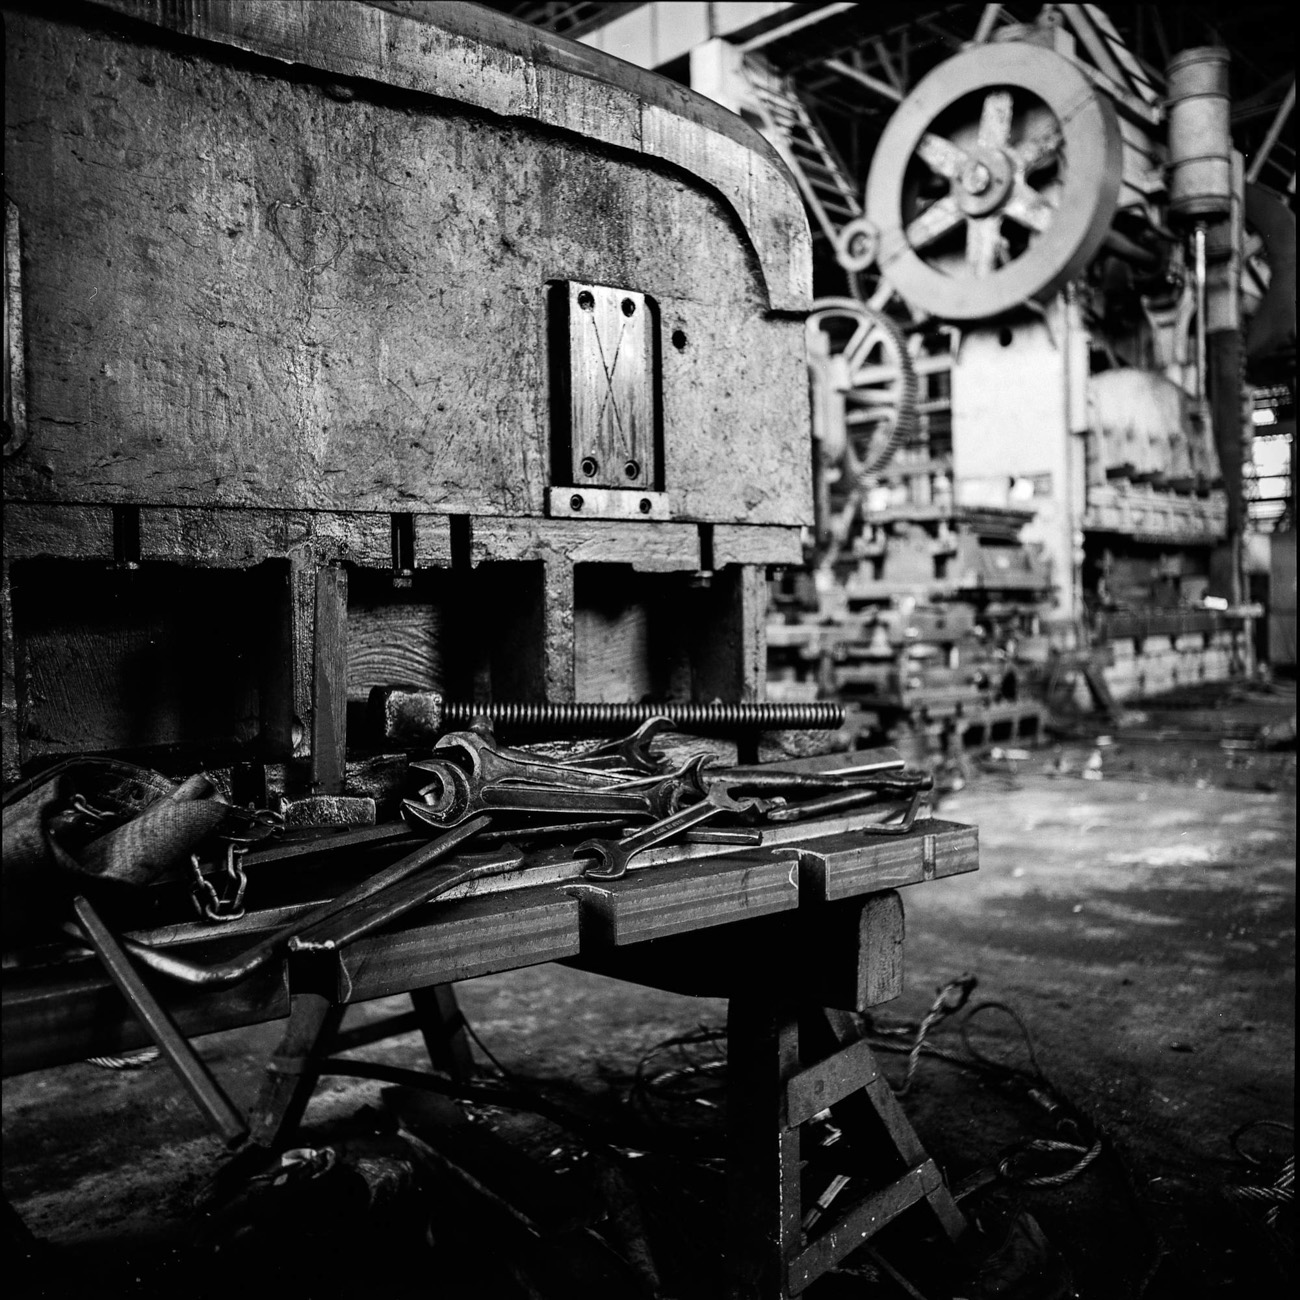 Prvi pogon ove tvornice izgrađen je 1916. godine. Tada se on zvao AMO (